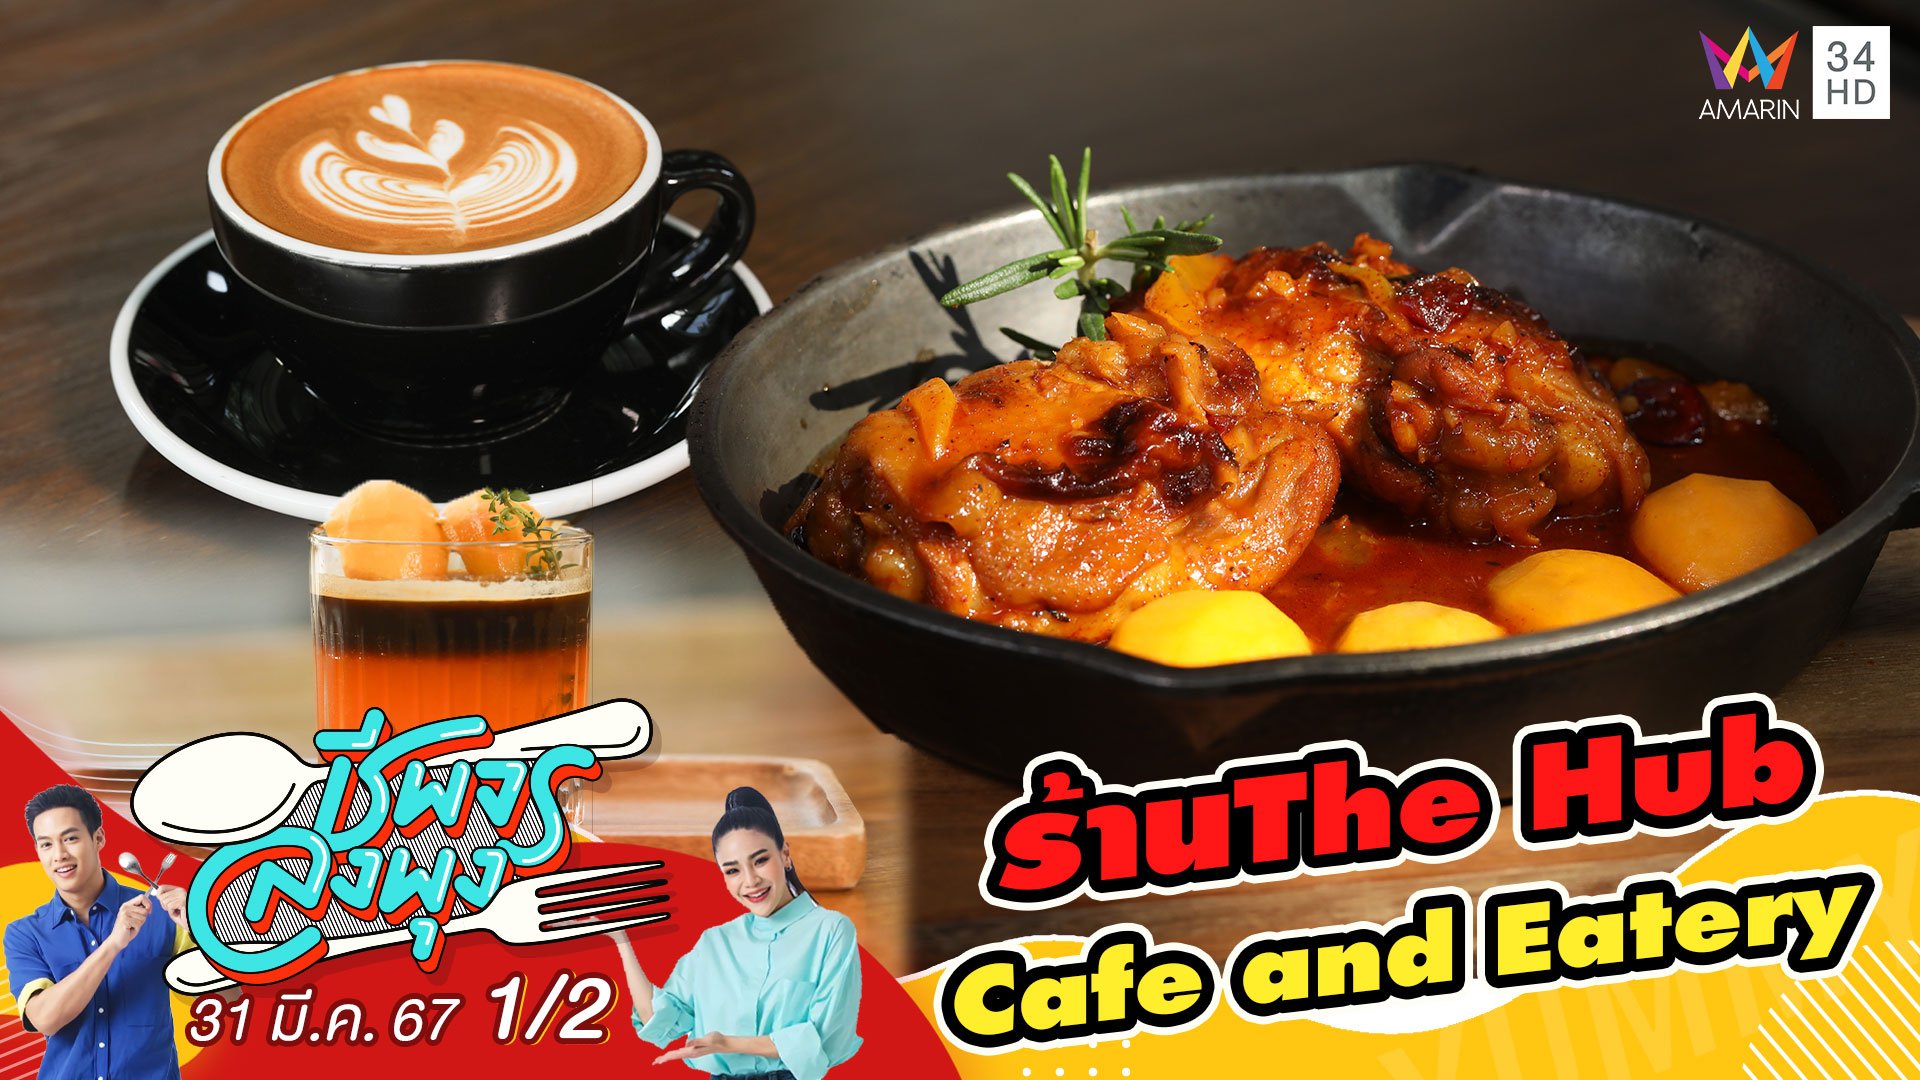 "ร้าน The Hub Cafe and Eatery" ร้านกาแฟ Specialty ในบรรยากาศสุดชิลล์ | ชีพจรลงพุง | 31 มี.ค. 67 (1/2) | AMARIN TVHD34